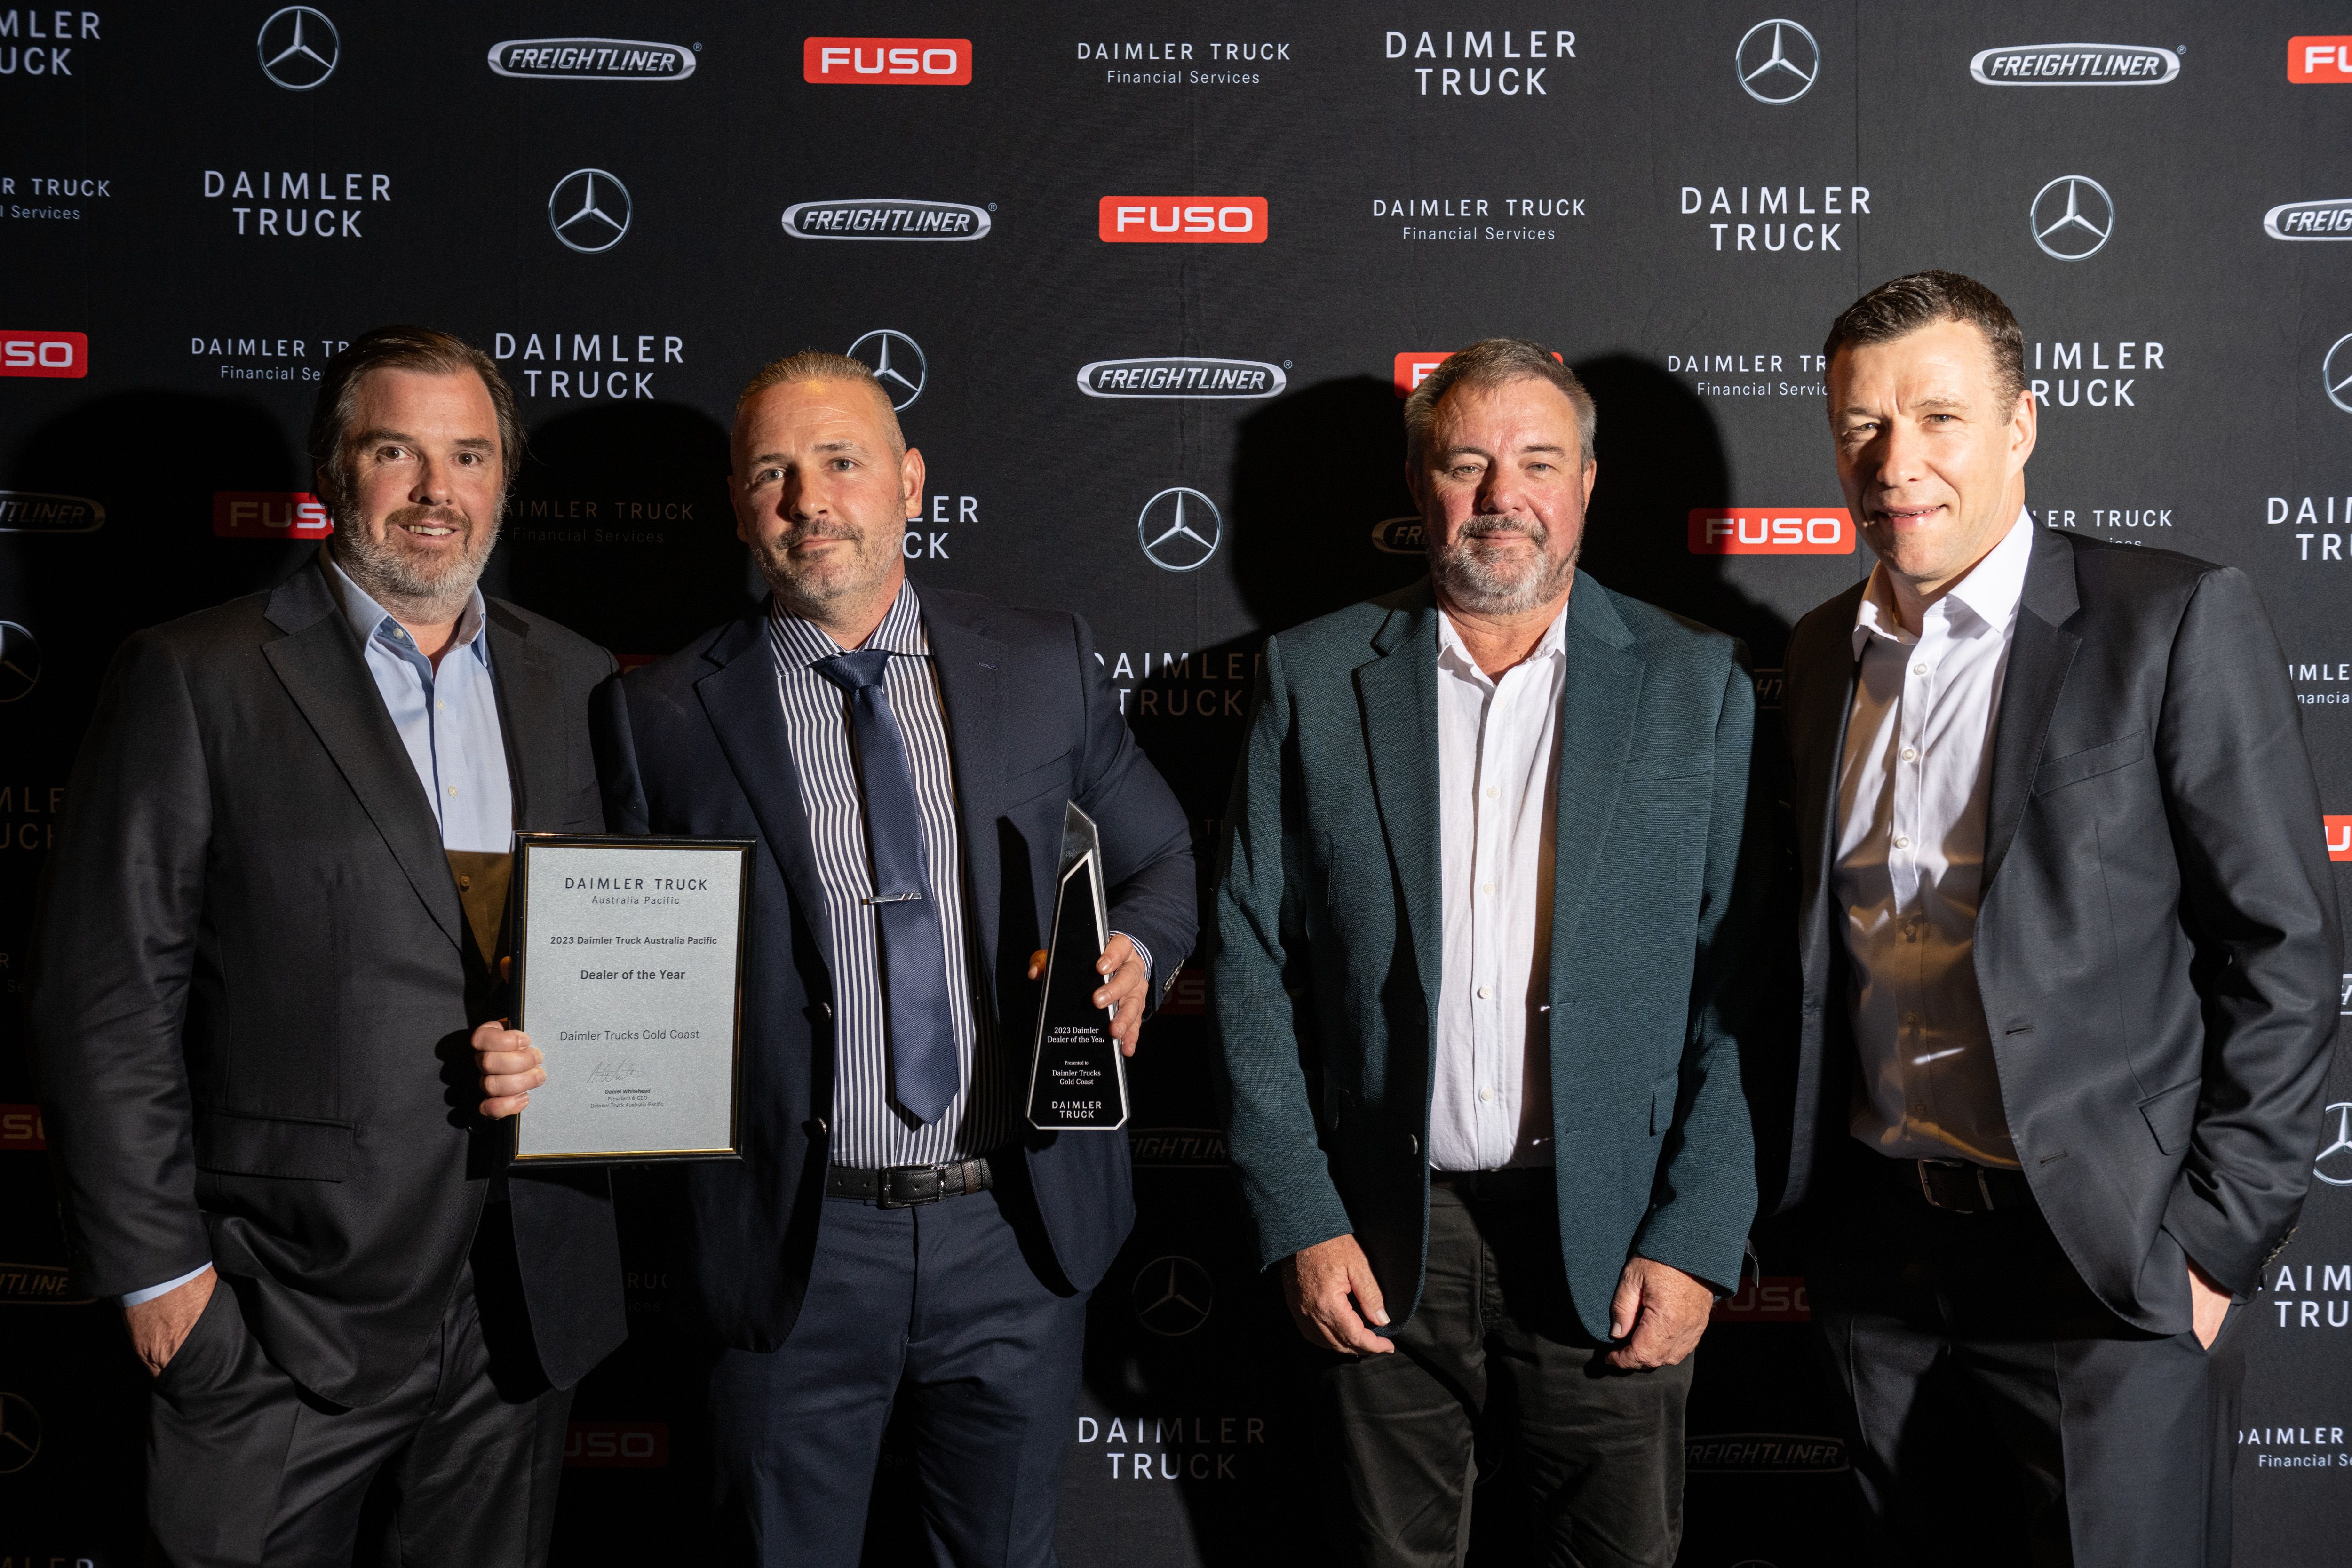 Daimler Trucks Gold Coast wins Daimler Truck Dealer of the Year Award for 2023